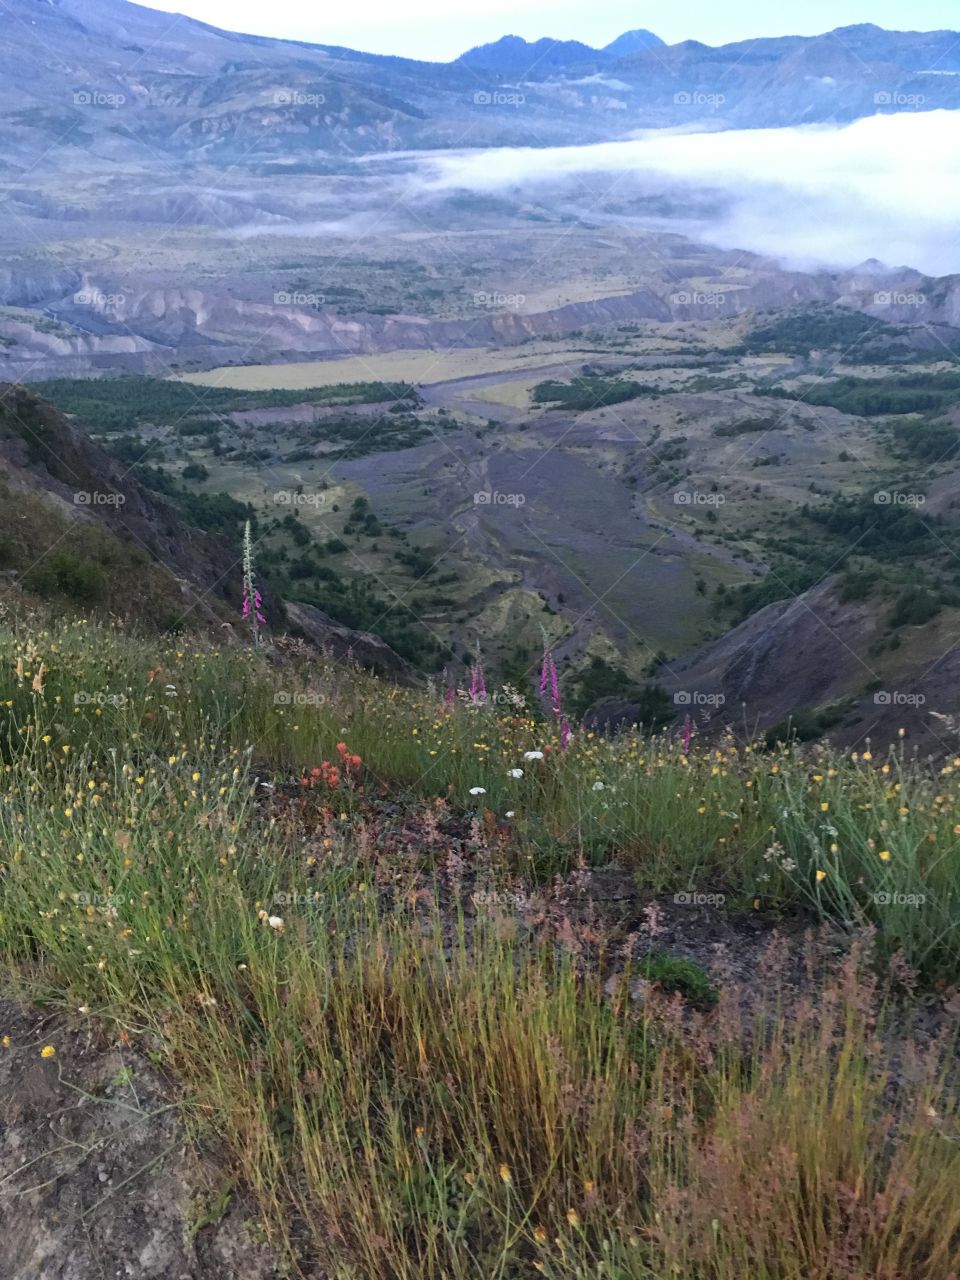 Mt.  St. Helen’s overlook the valley 